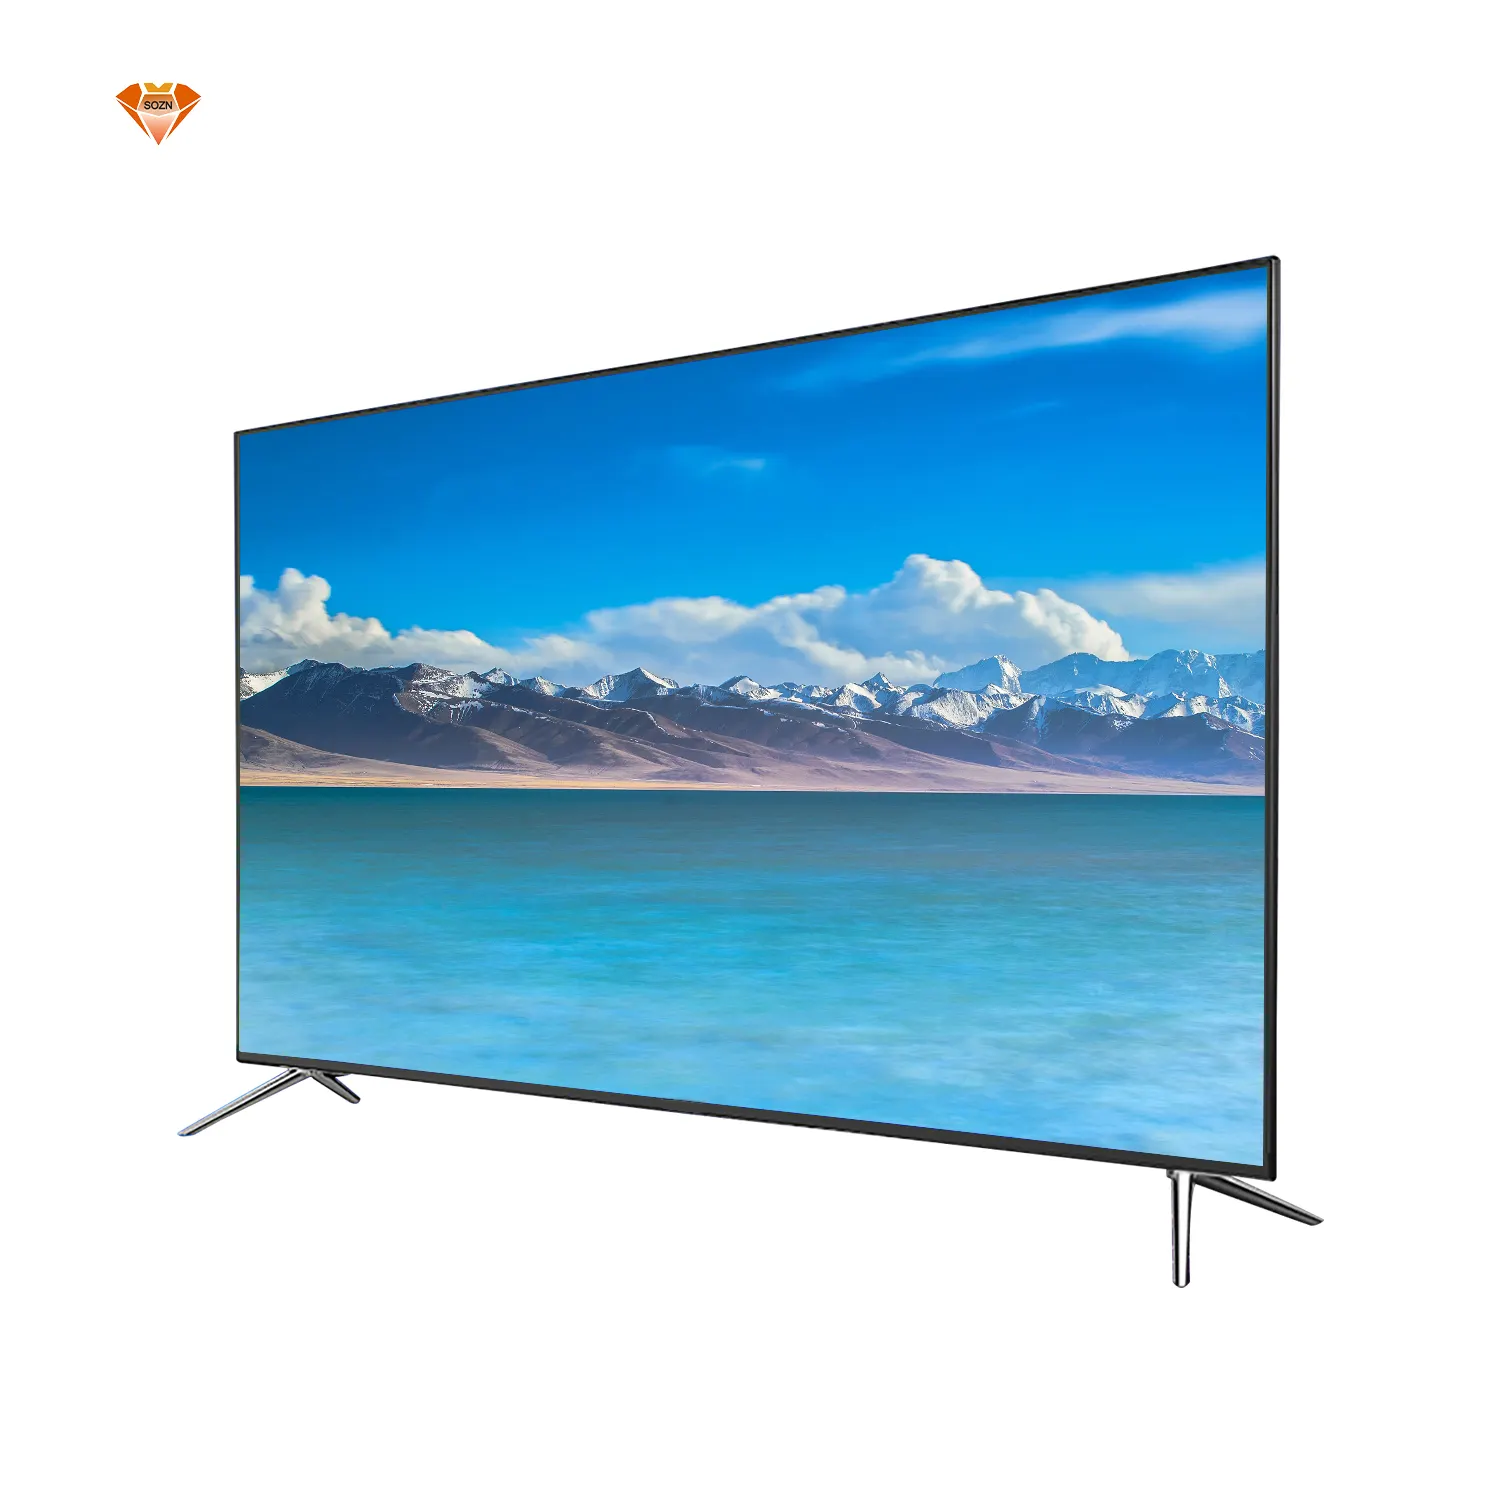 2021 hot Hochwertige Smart-TV 75 Zoll heißer Verkauf neues Produkt Flach bildschirm LED-TV-Fernseher 4k Smart-TV 75 Zoll Mit HDR